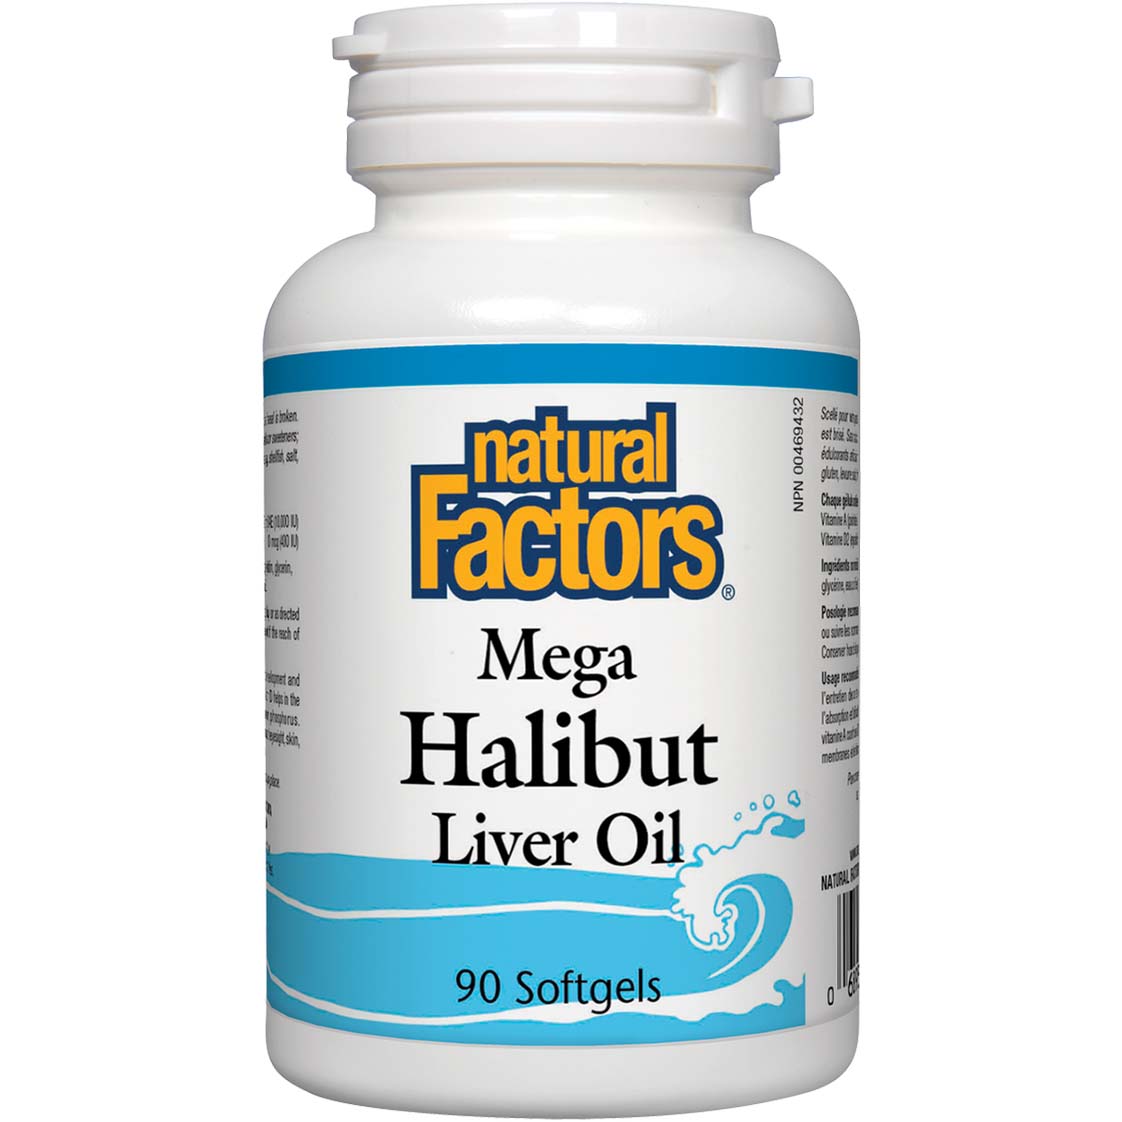 Natural Factors Mega Halibut Liver Oil 90 Softgels